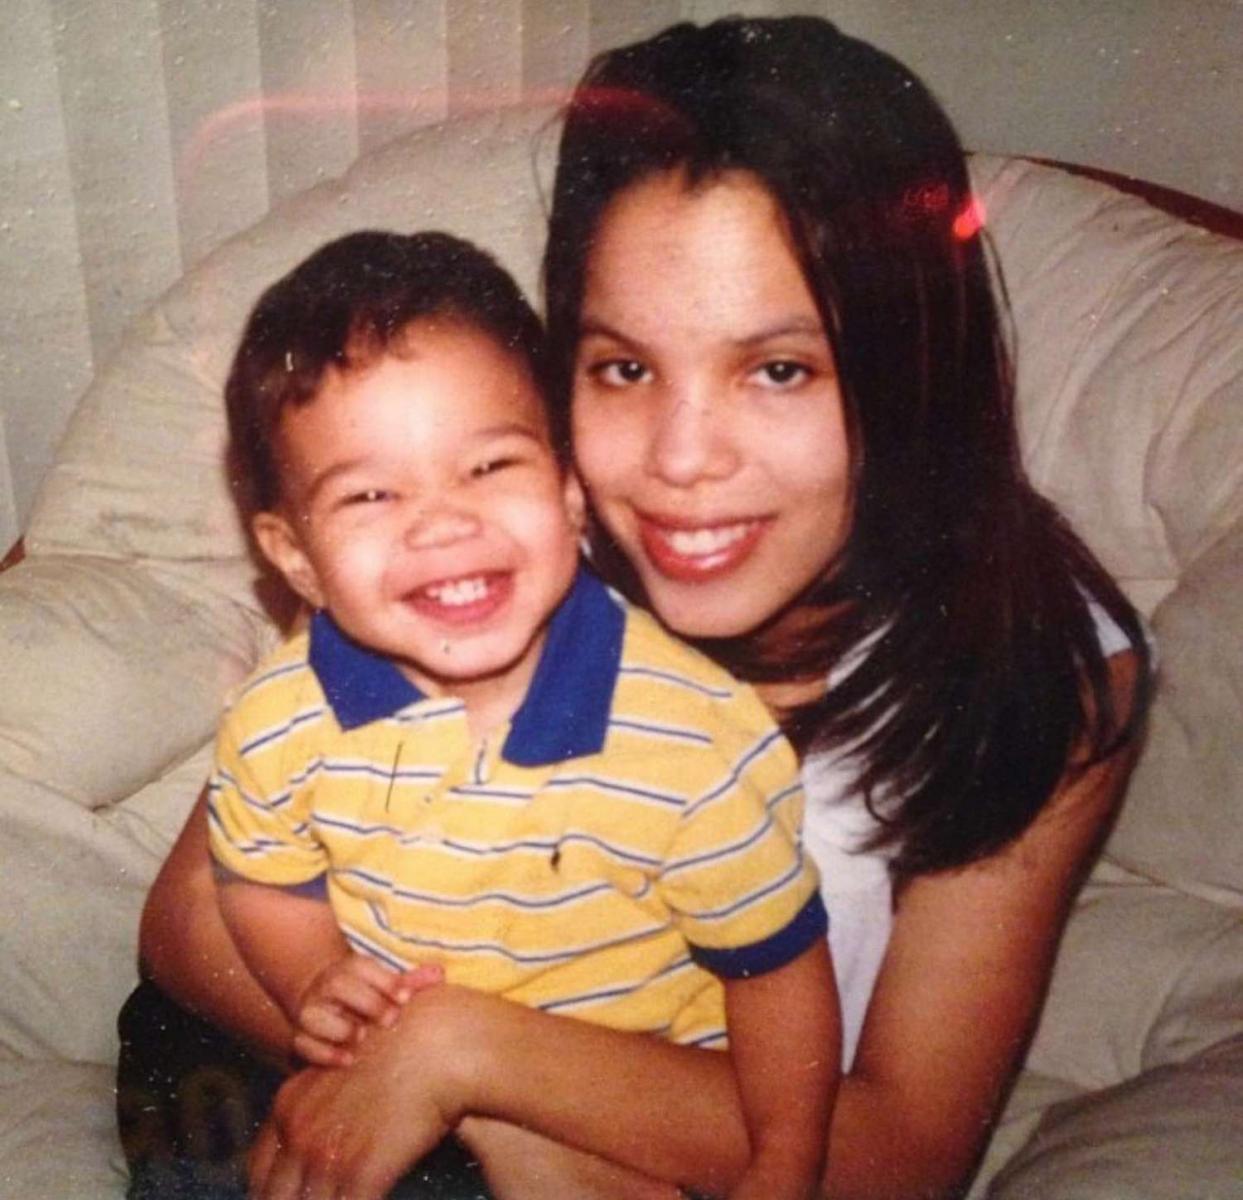 Tatum and his mom | Instagram